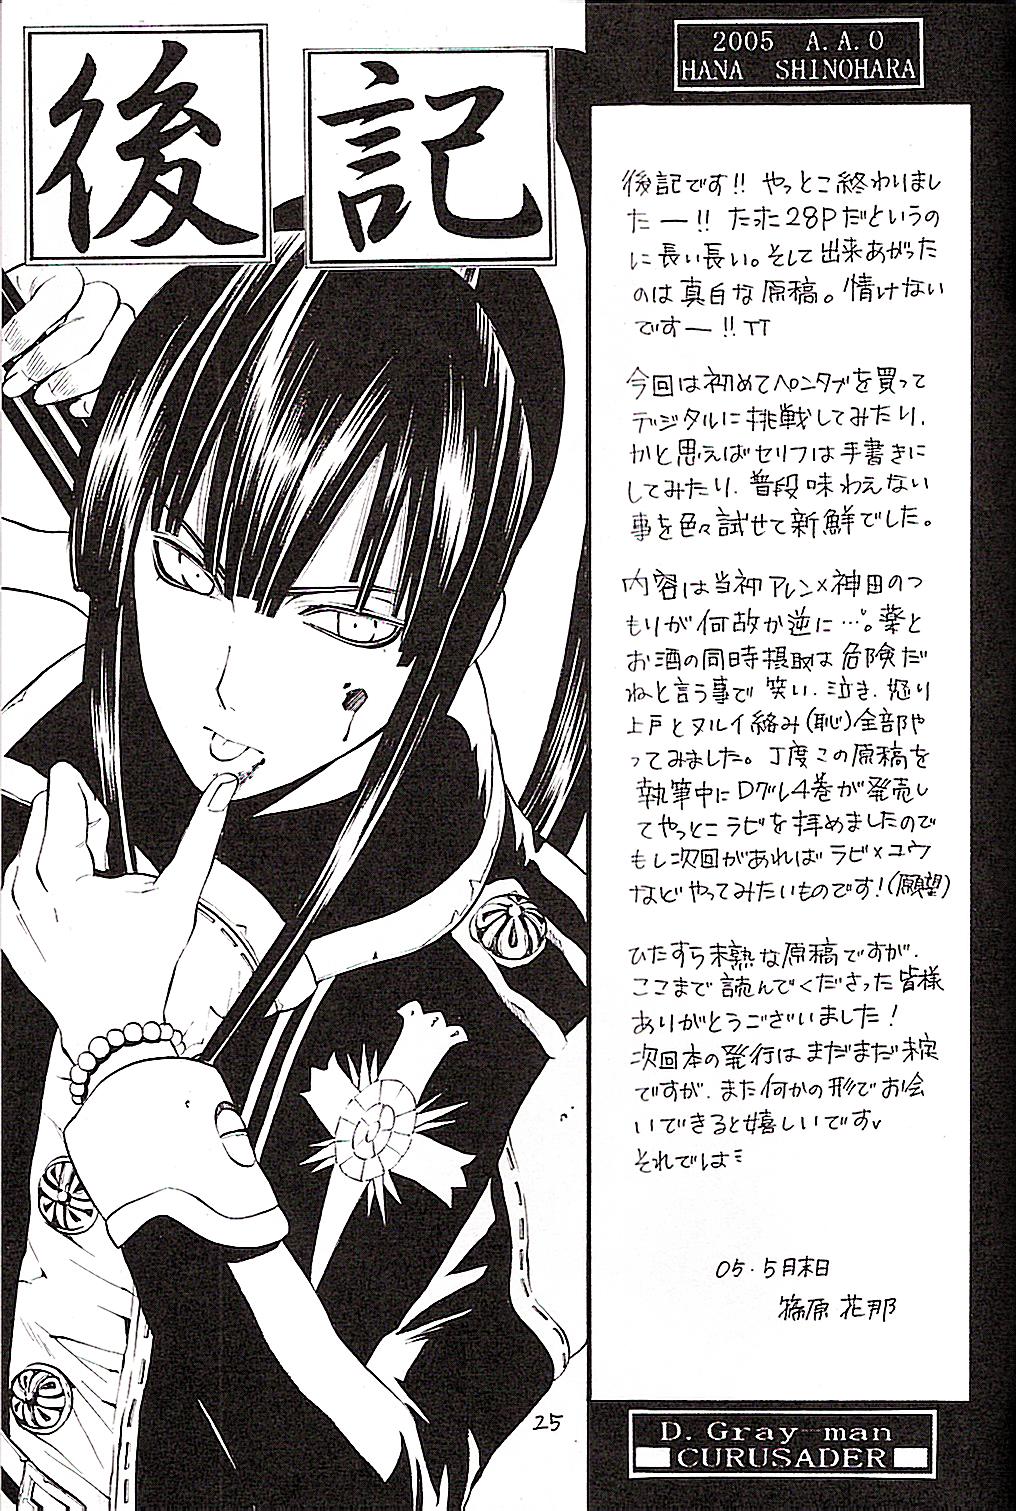 (Mimiket 12) [A.A.O (Shinohara Hana)] CRUSADER (D.Gray-man) page 25 full